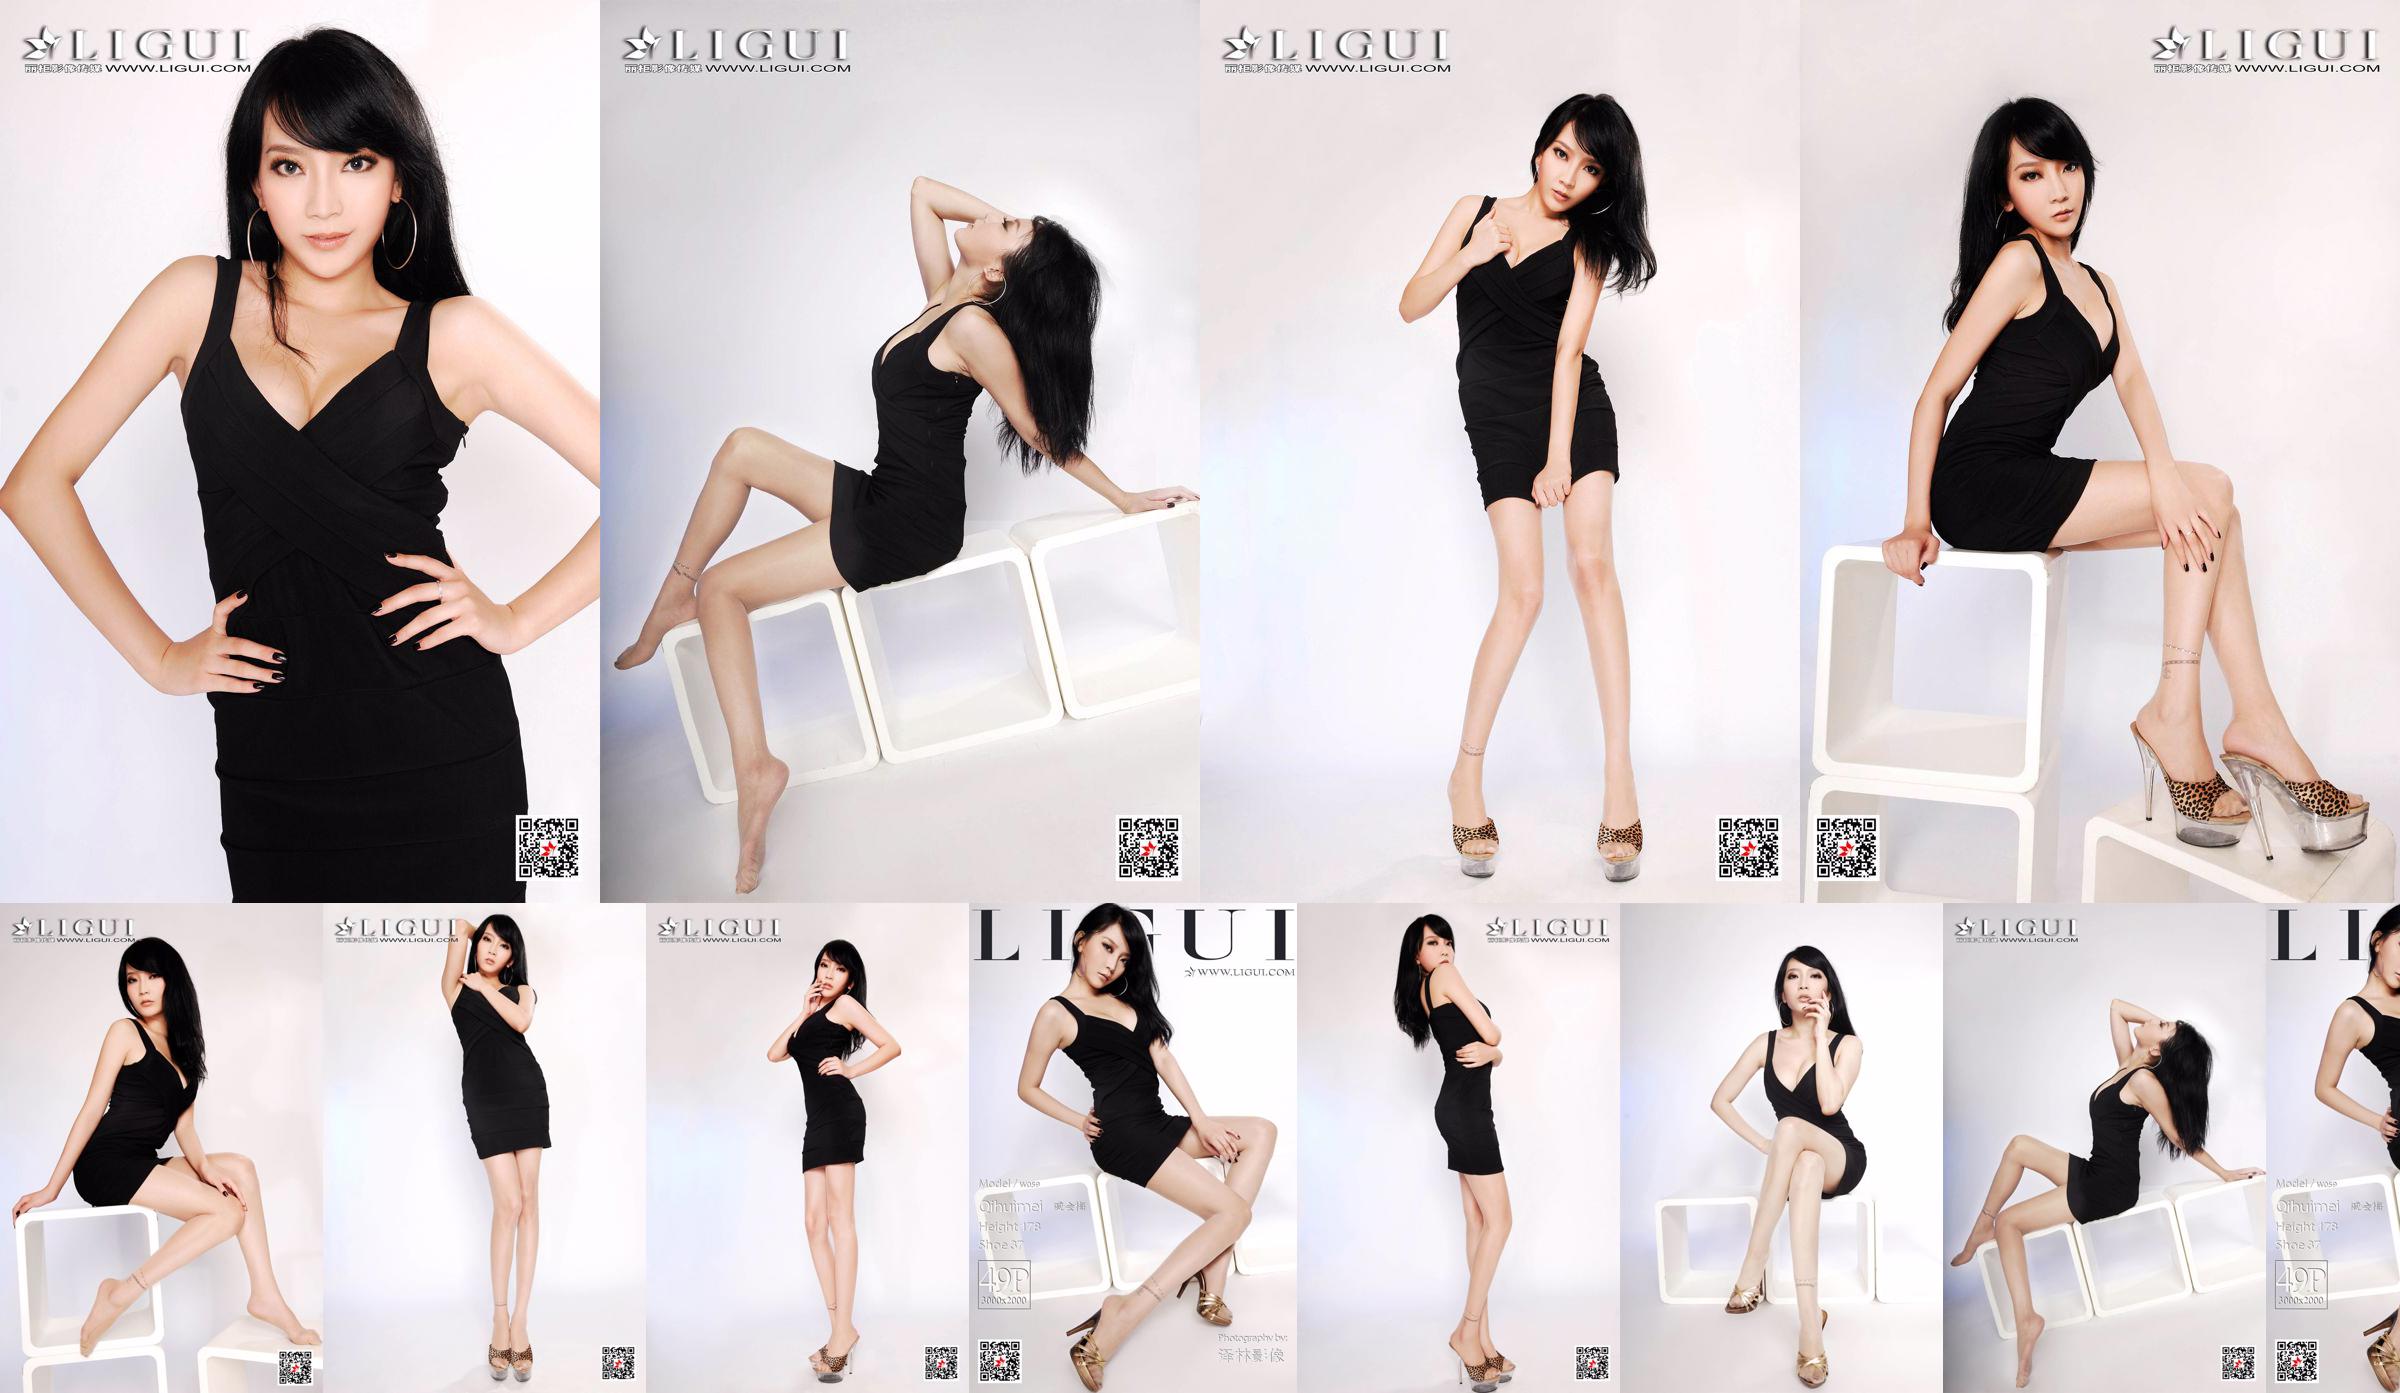 Người mẫu Qi Huimei "Chụp chân heo trong studio" [丽 柜 Ligui] No.5567bd Trang 1